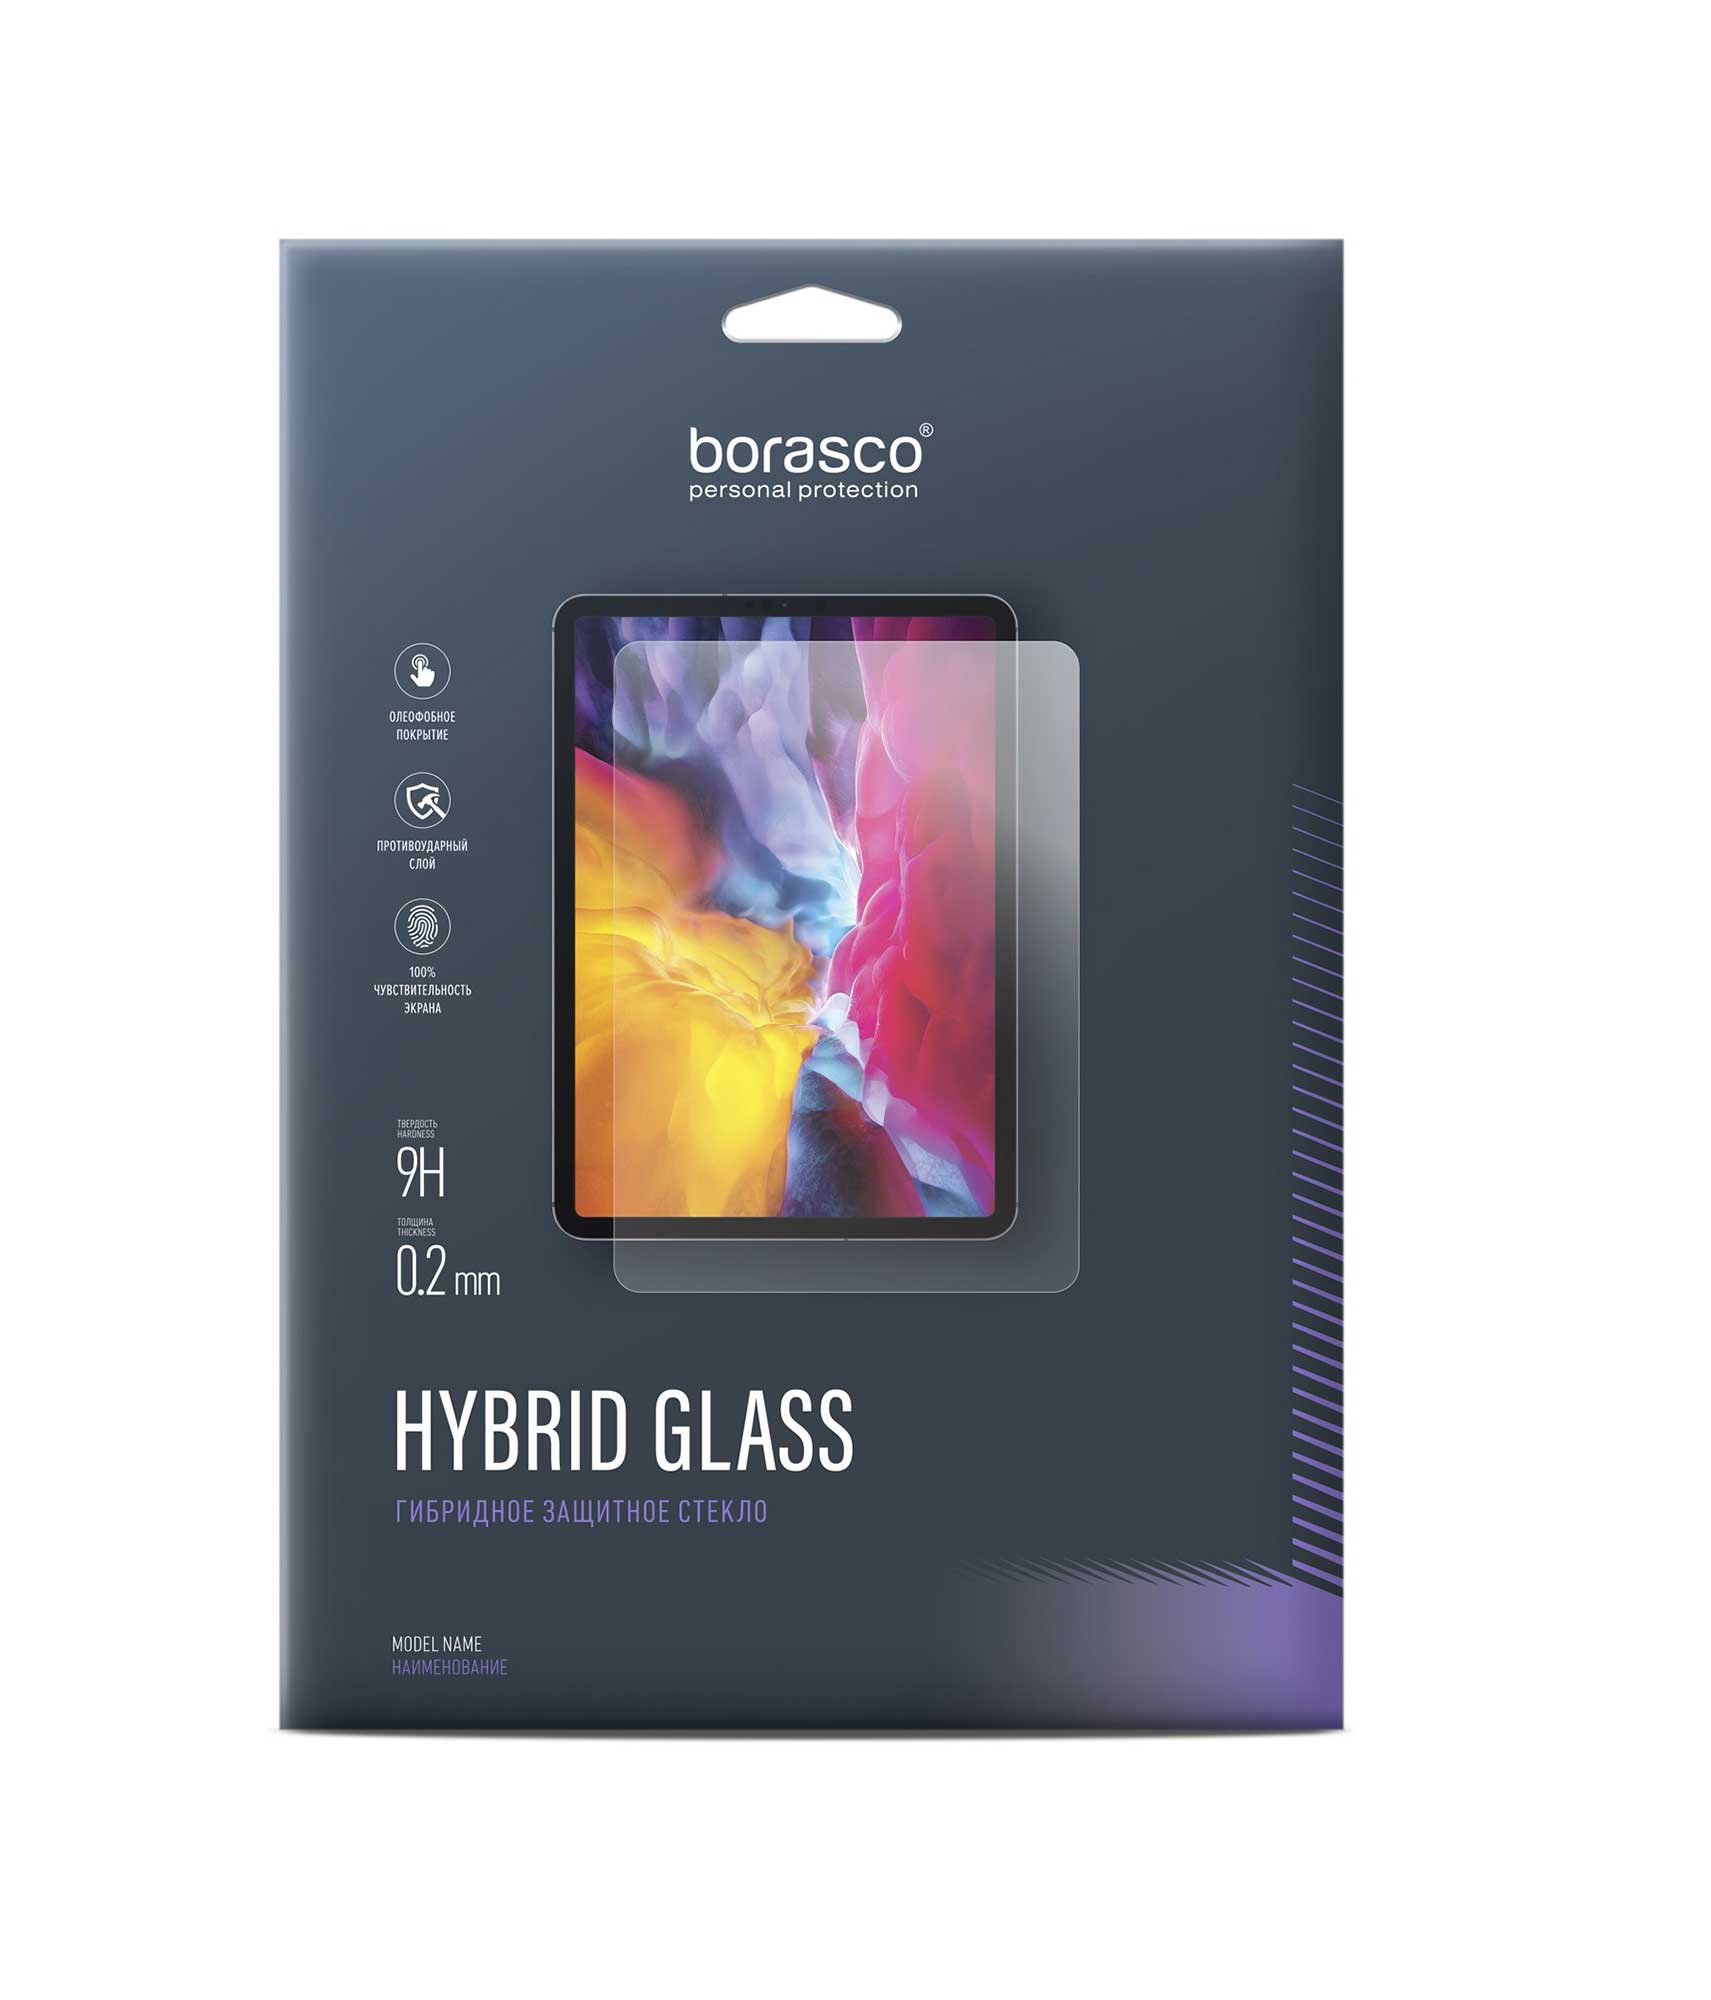 Защитное стекло Hybrid Glass для Huawei MatePad T10s 10,1 2 шт защитное стекло для планшета huawei matepad t10 9 7 дюйма t10s 10 1 дюйма